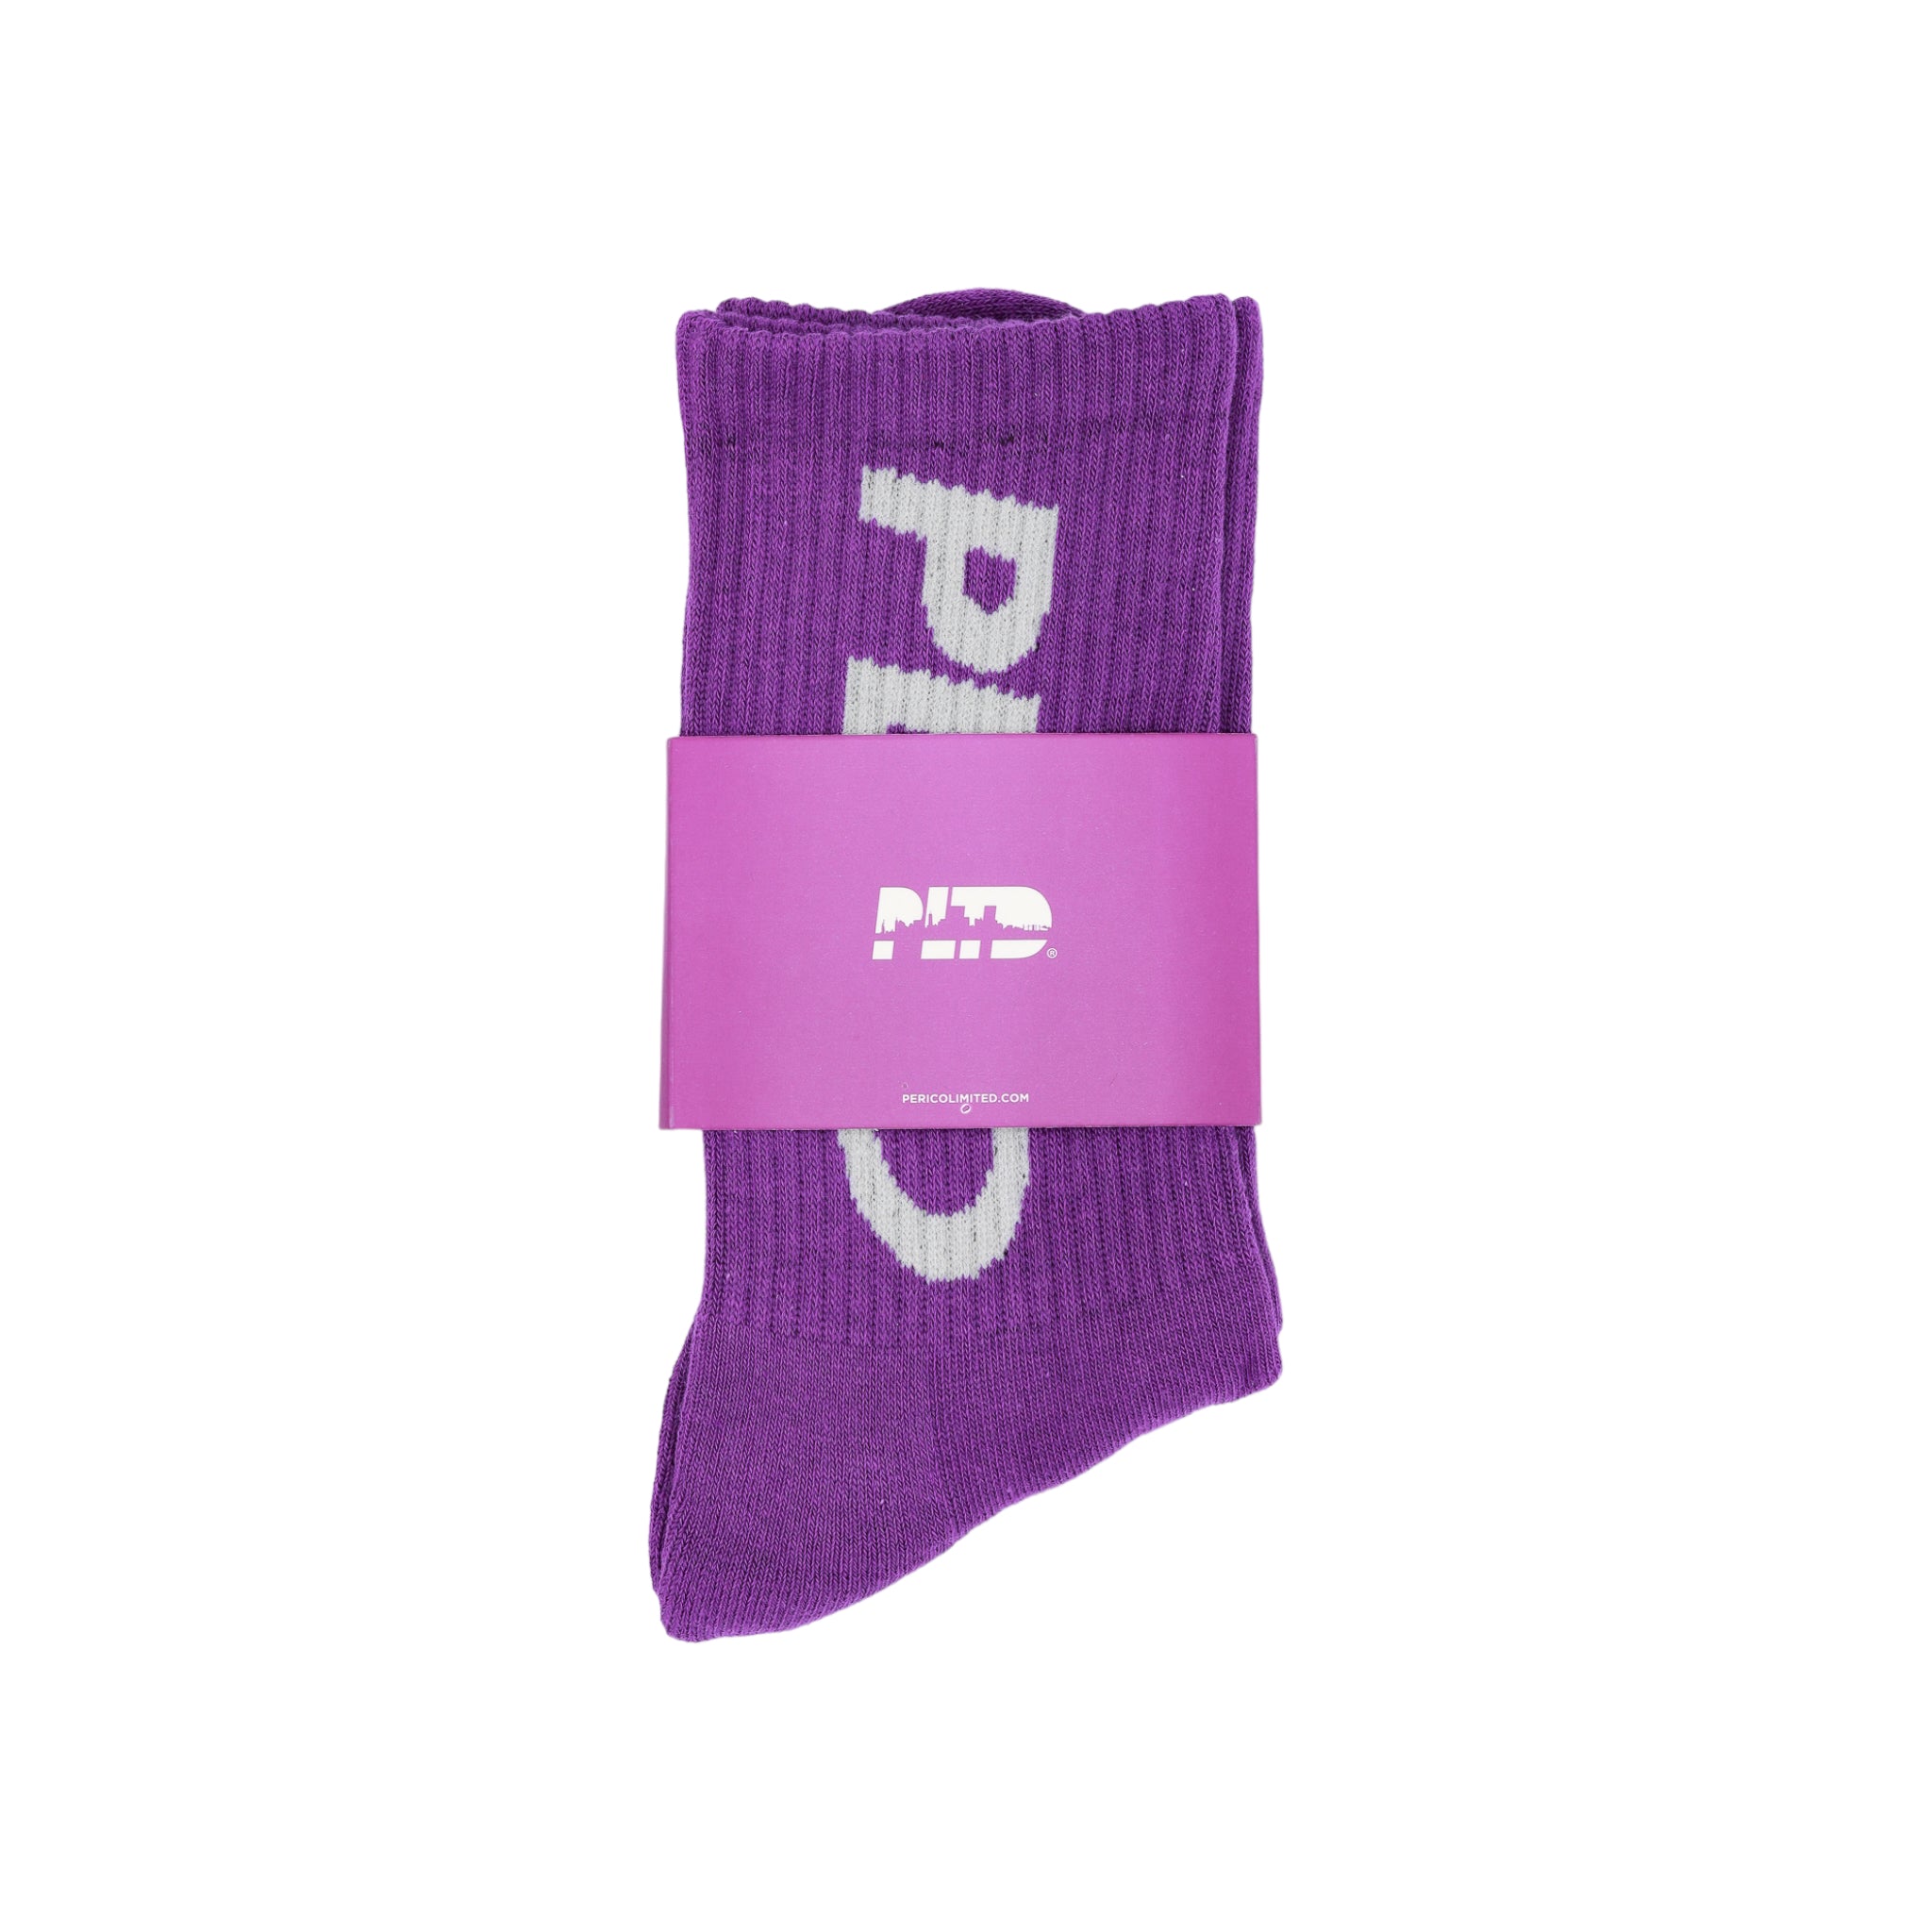 Team PLTD - Barney Terry Cloth Socks